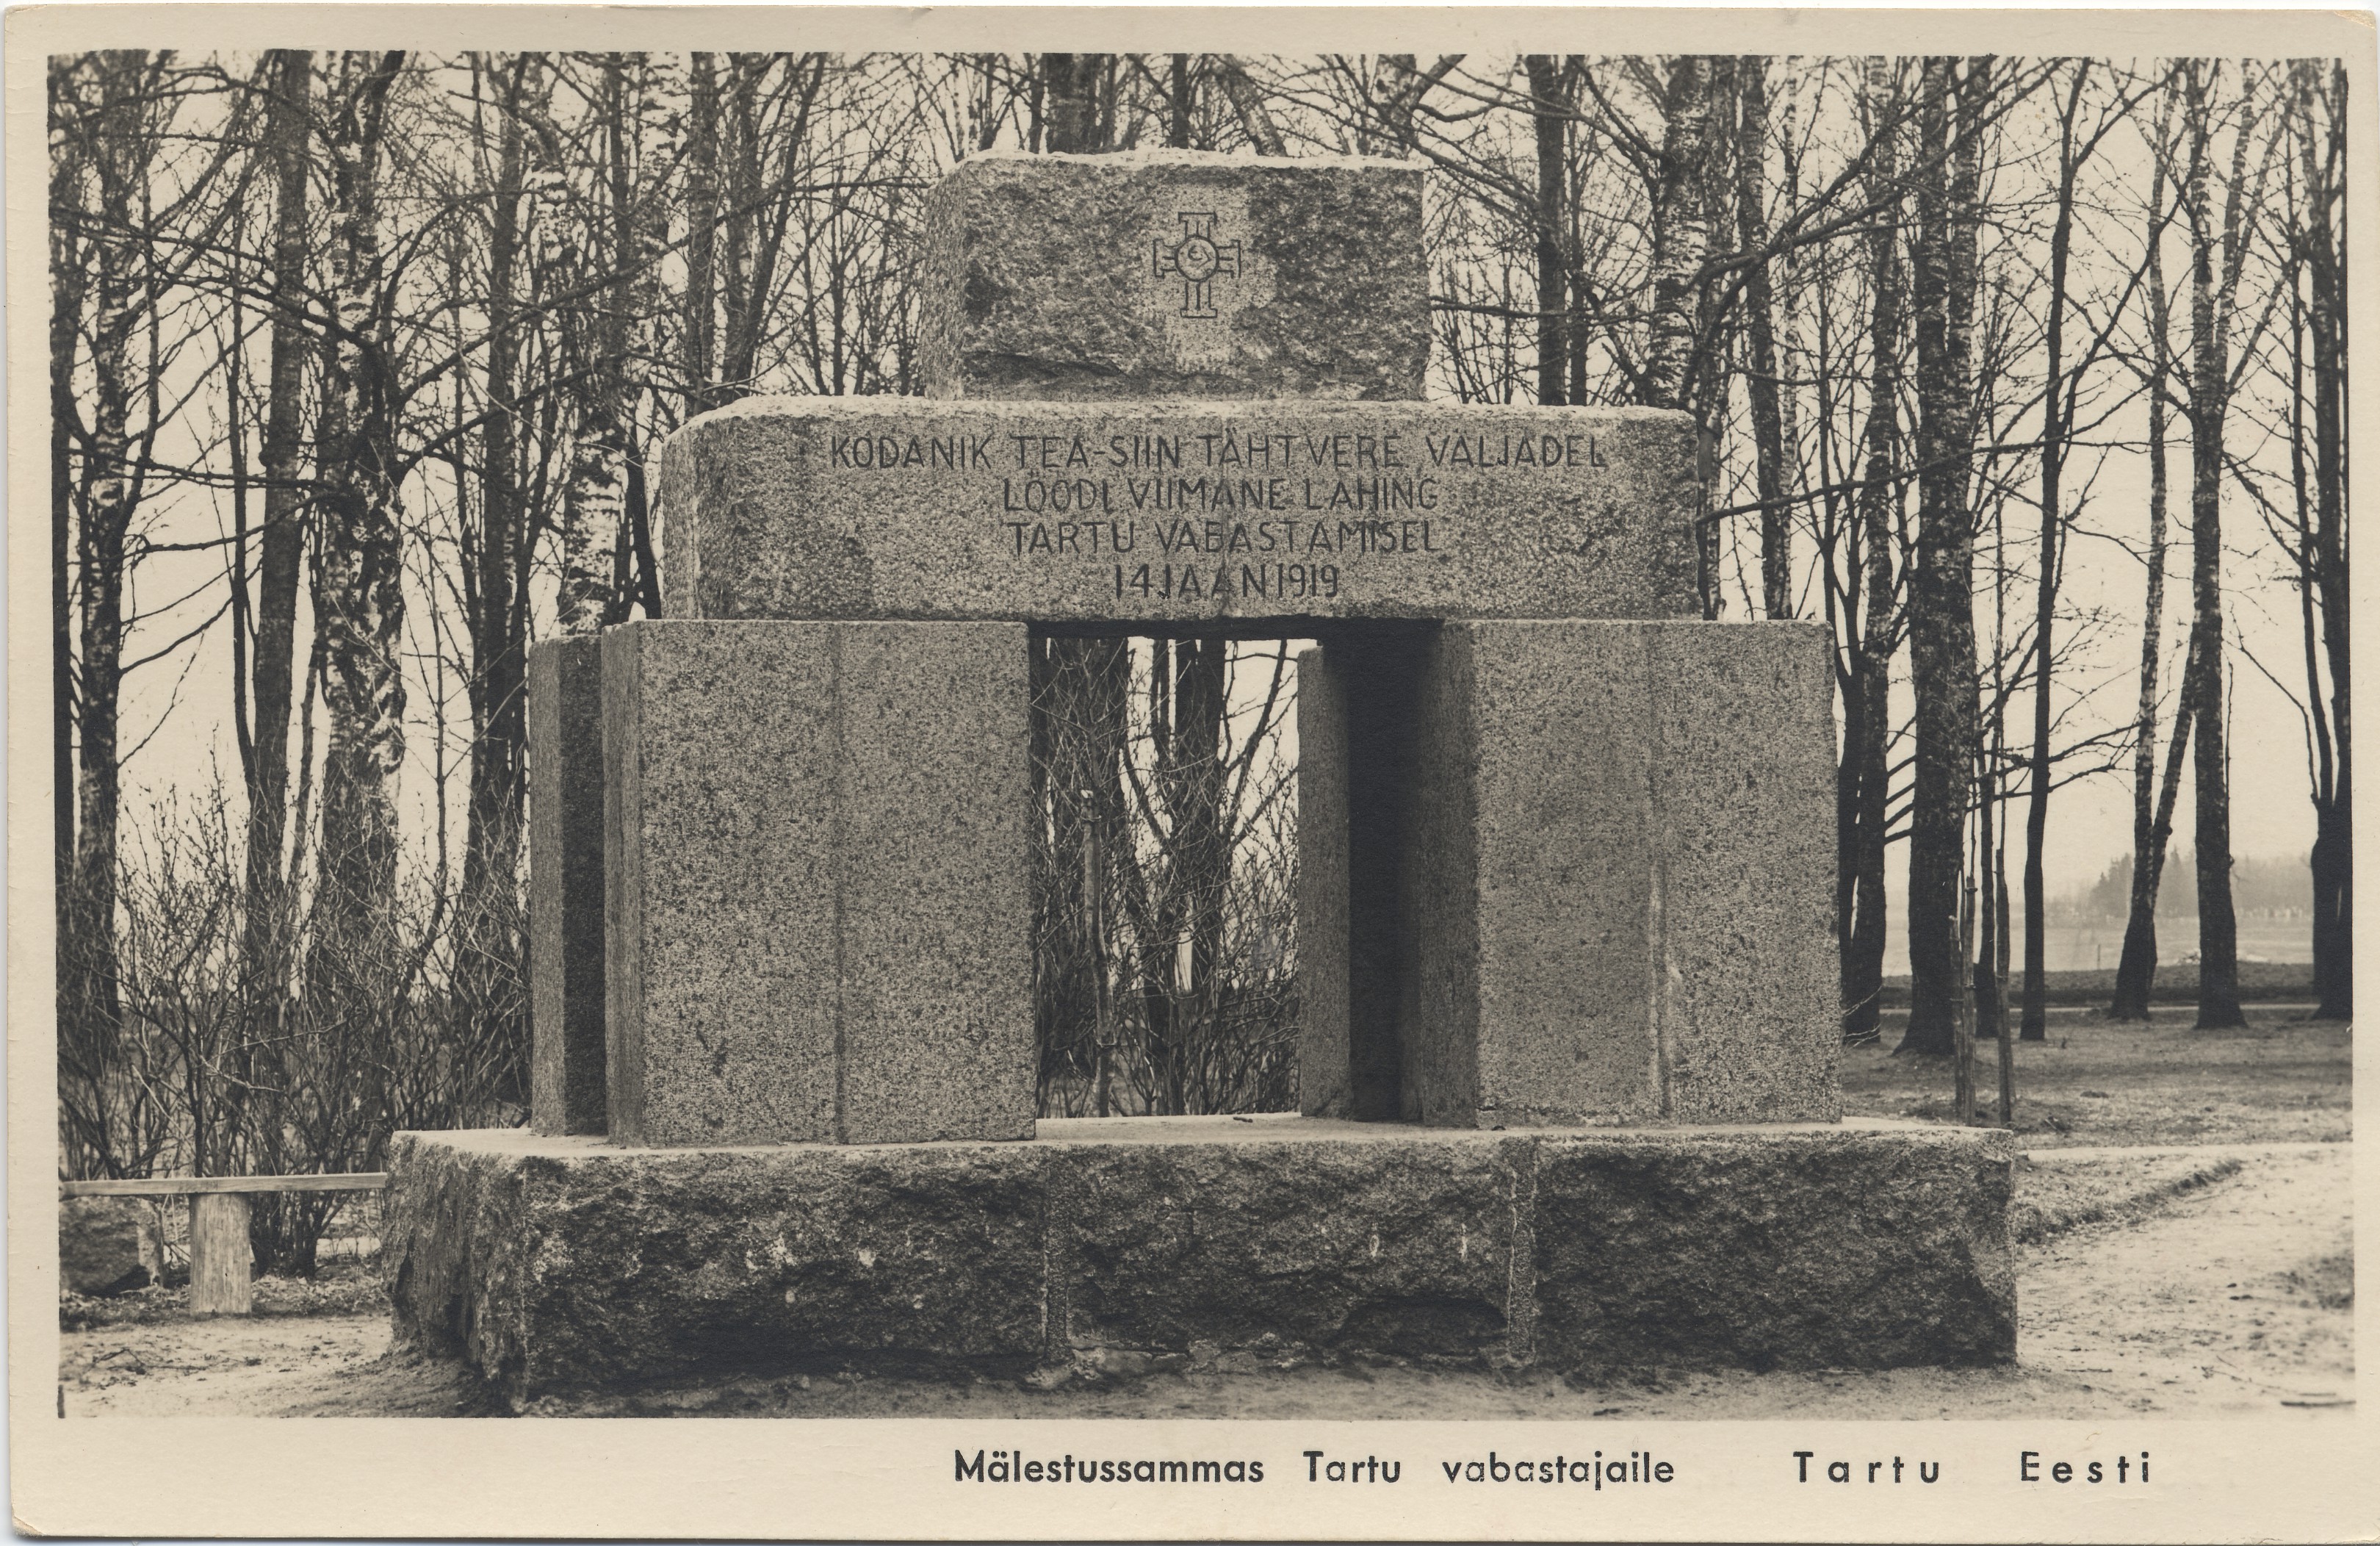 Tartu Estonia : a monument for Tartu's releasers